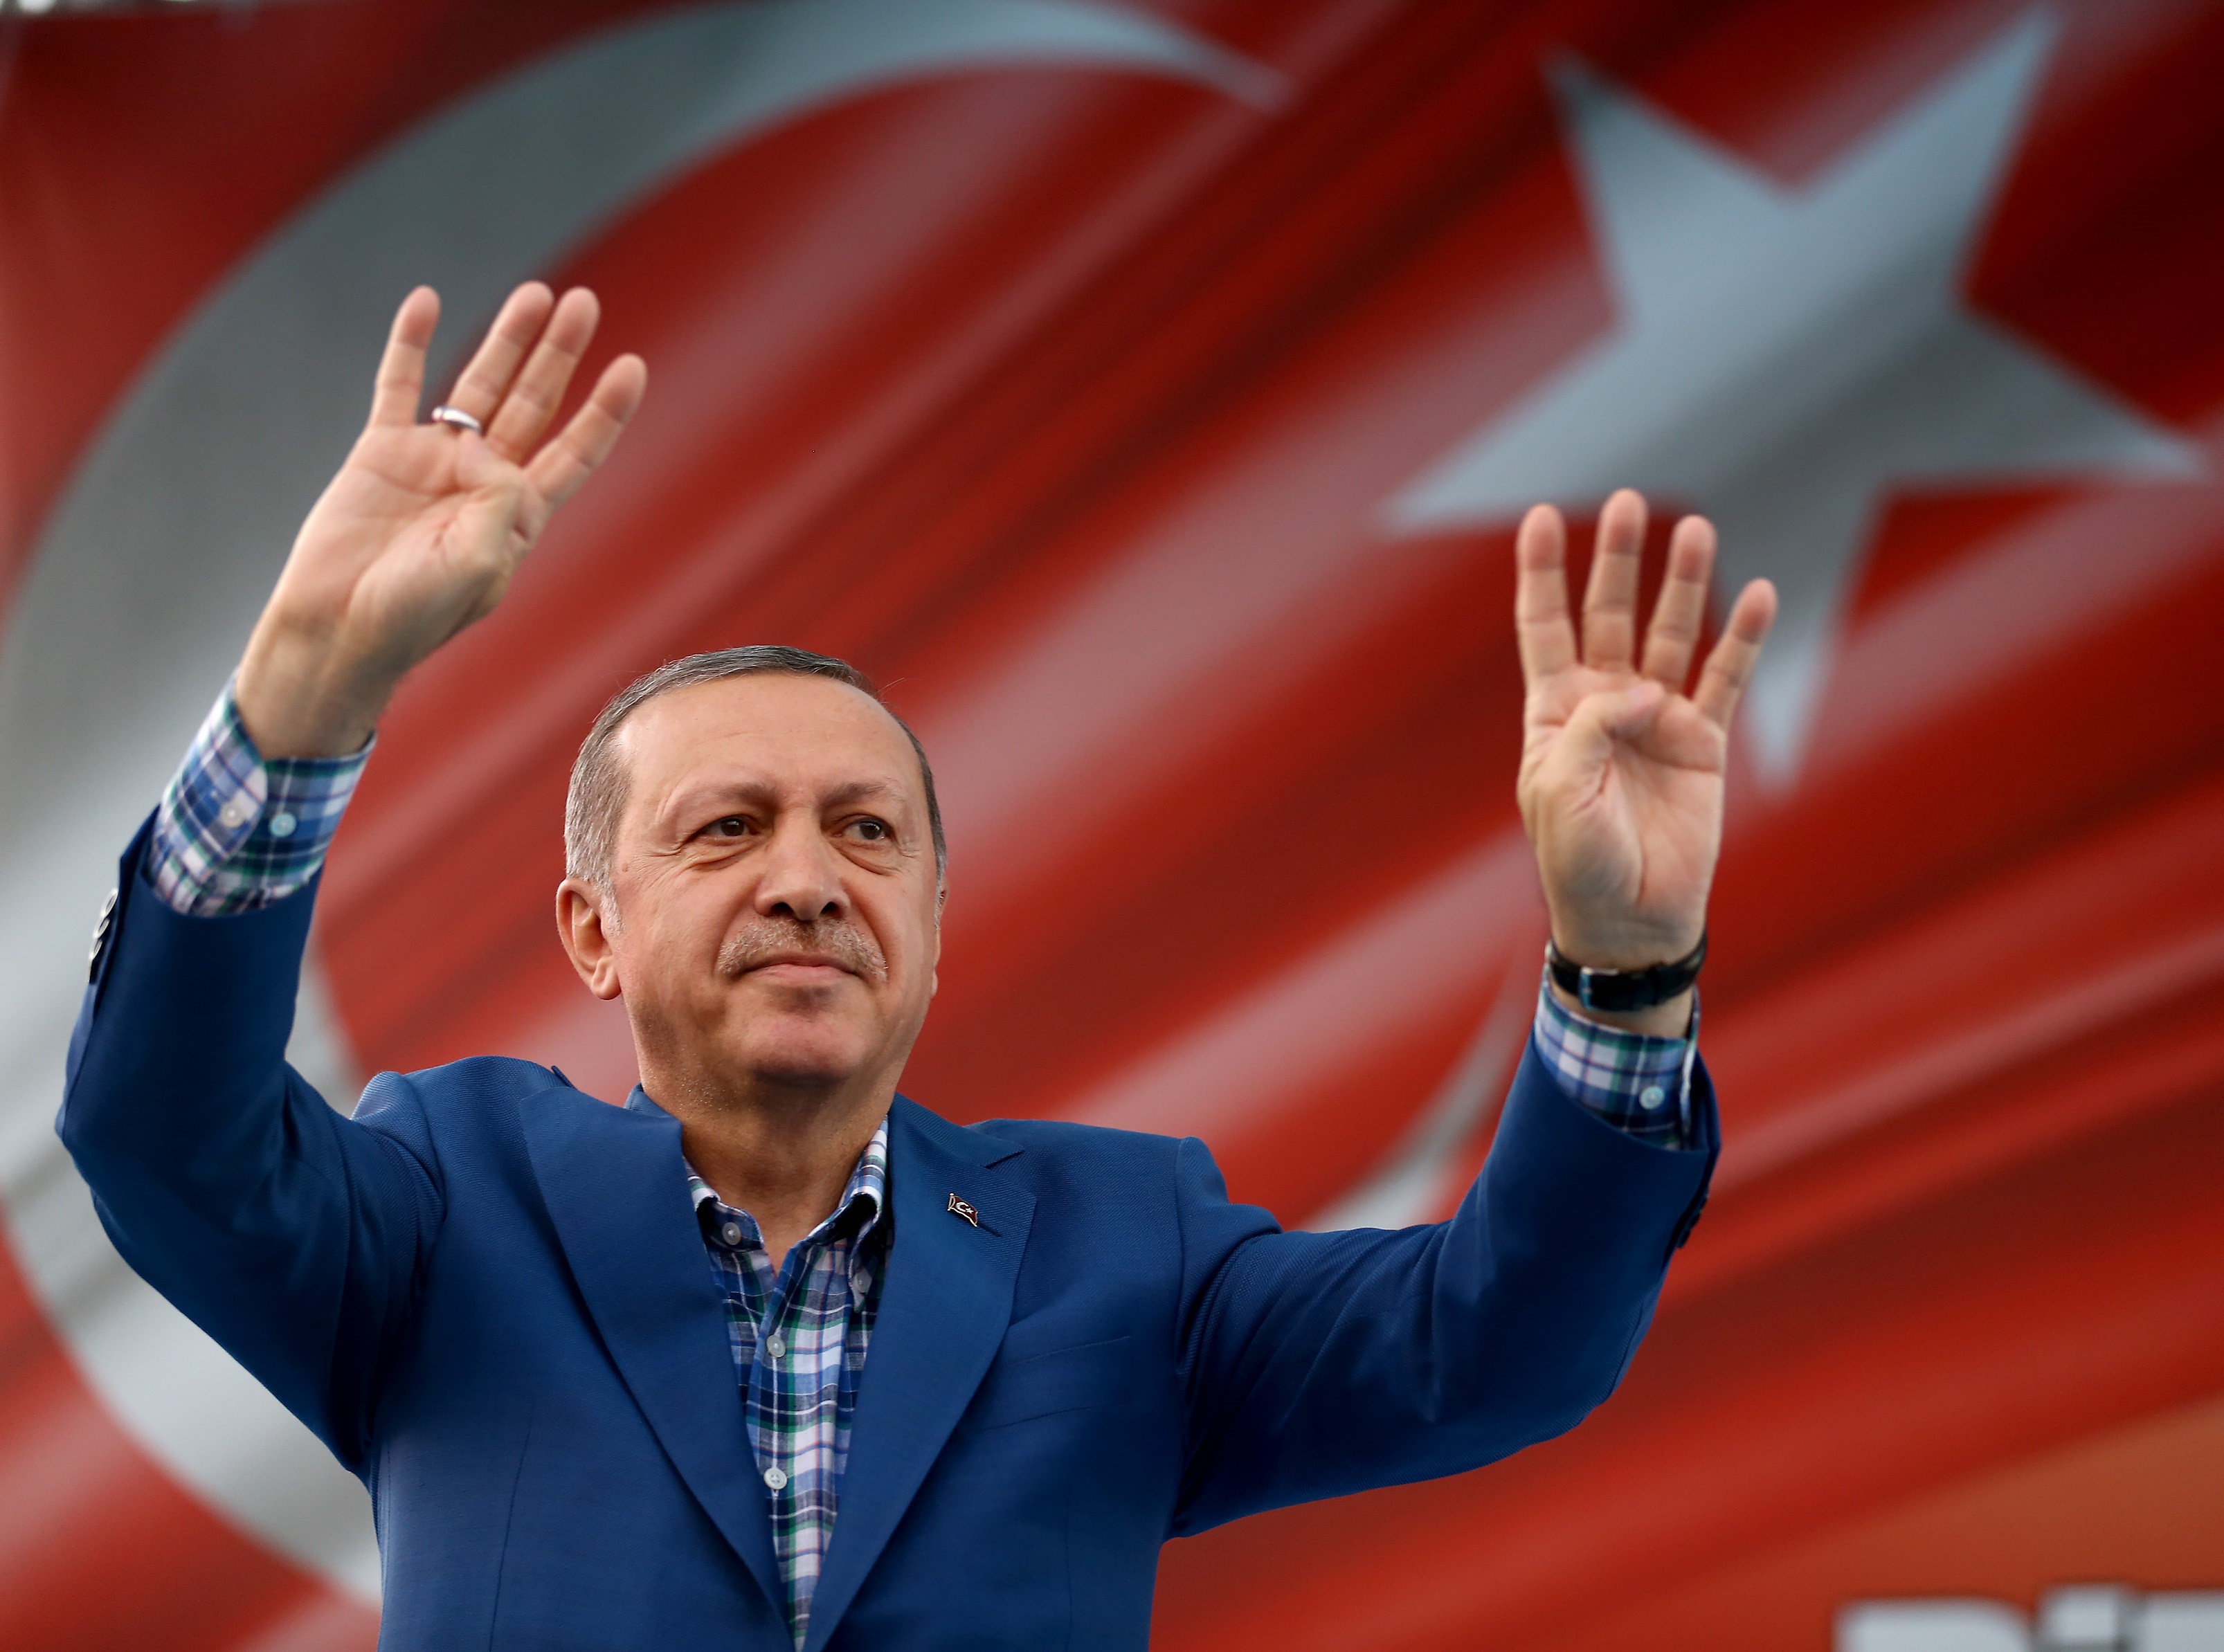 Bombele economice care ar putea arunca Turcia în aer în timpul noului mandat al lui Erdogan